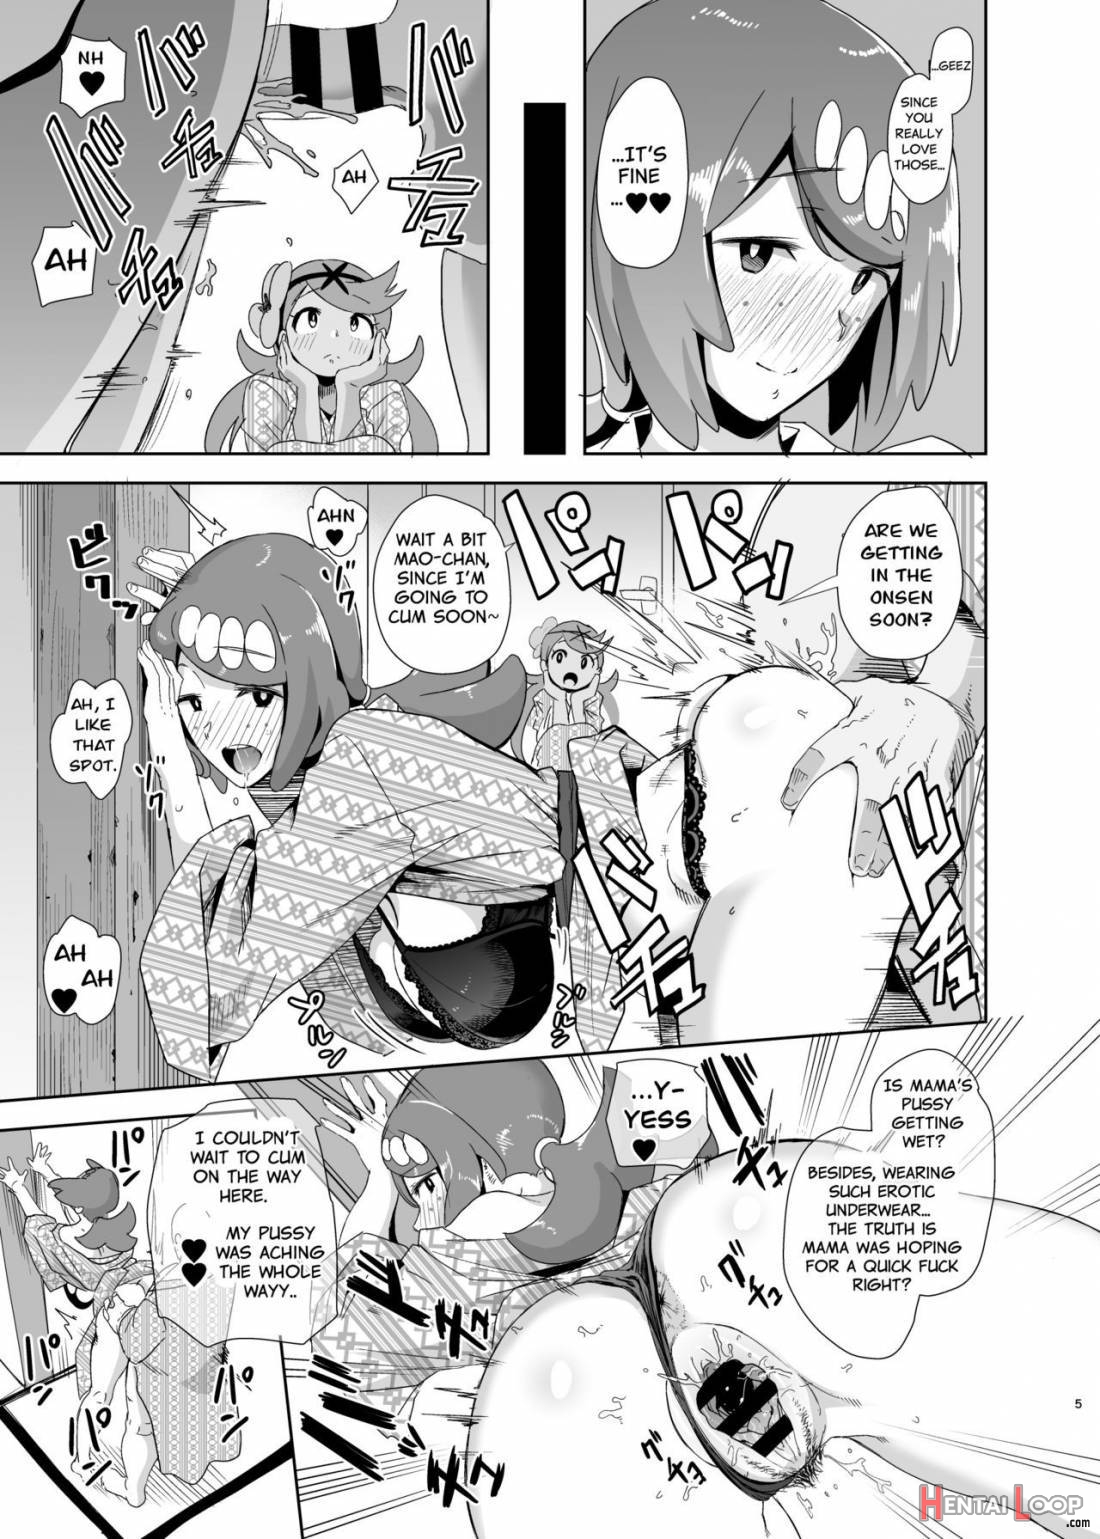 Alola no Yoru no Sugata 2 page 4